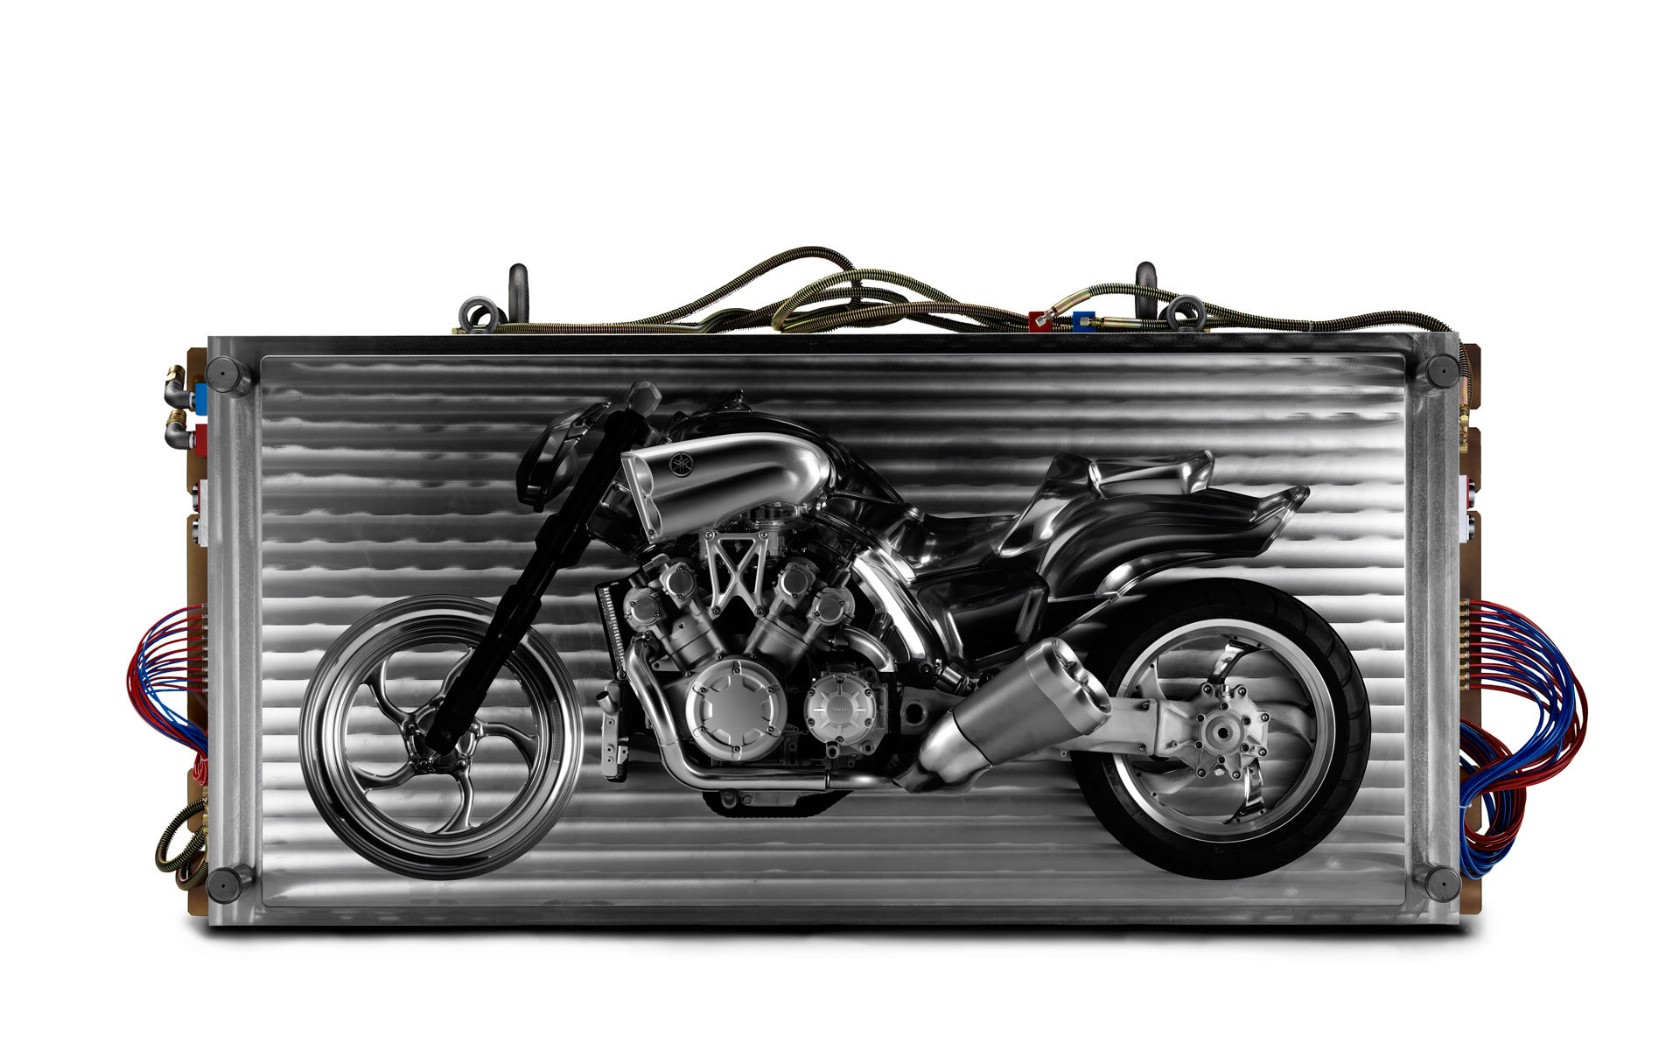 壁纸1680x1050概念摩托车 3 17壁纸 概念摩托车壁纸 概念摩托车图片 概念摩托车素材 汽车壁纸 汽车图库 汽车图片素材桌面壁纸